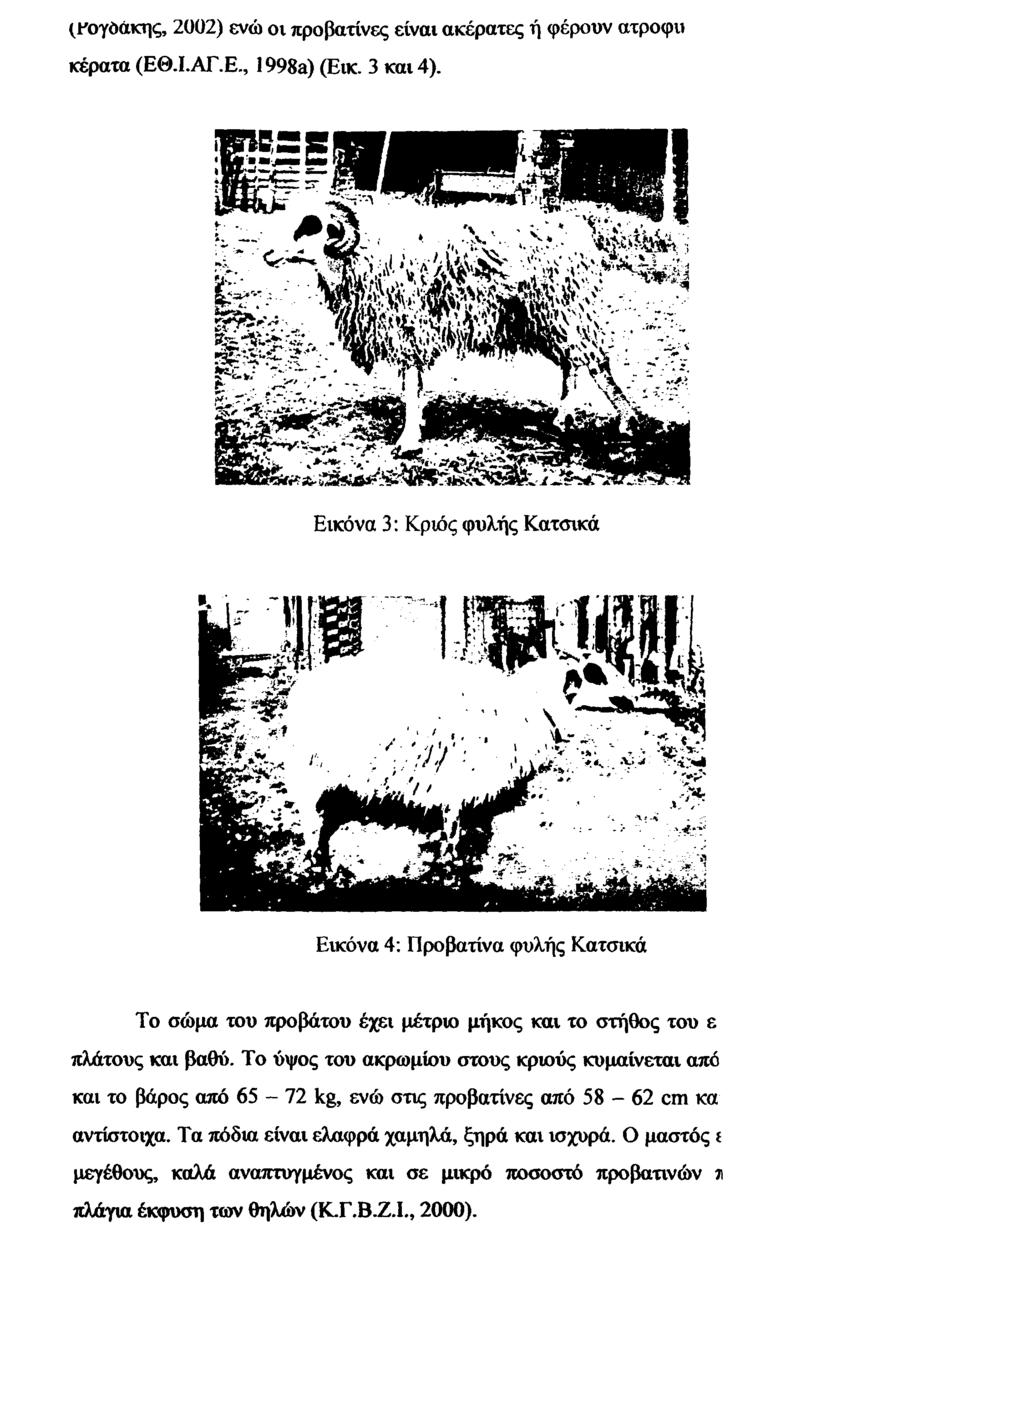 (Ρογόάκης, 2002) ενώ ον προβατίνες είναι ακέρατες ή φέρουν ατροφυ κέρατα (ΕΘ.Ι.ΑΓ.Ε., 1998a) (Εικ.